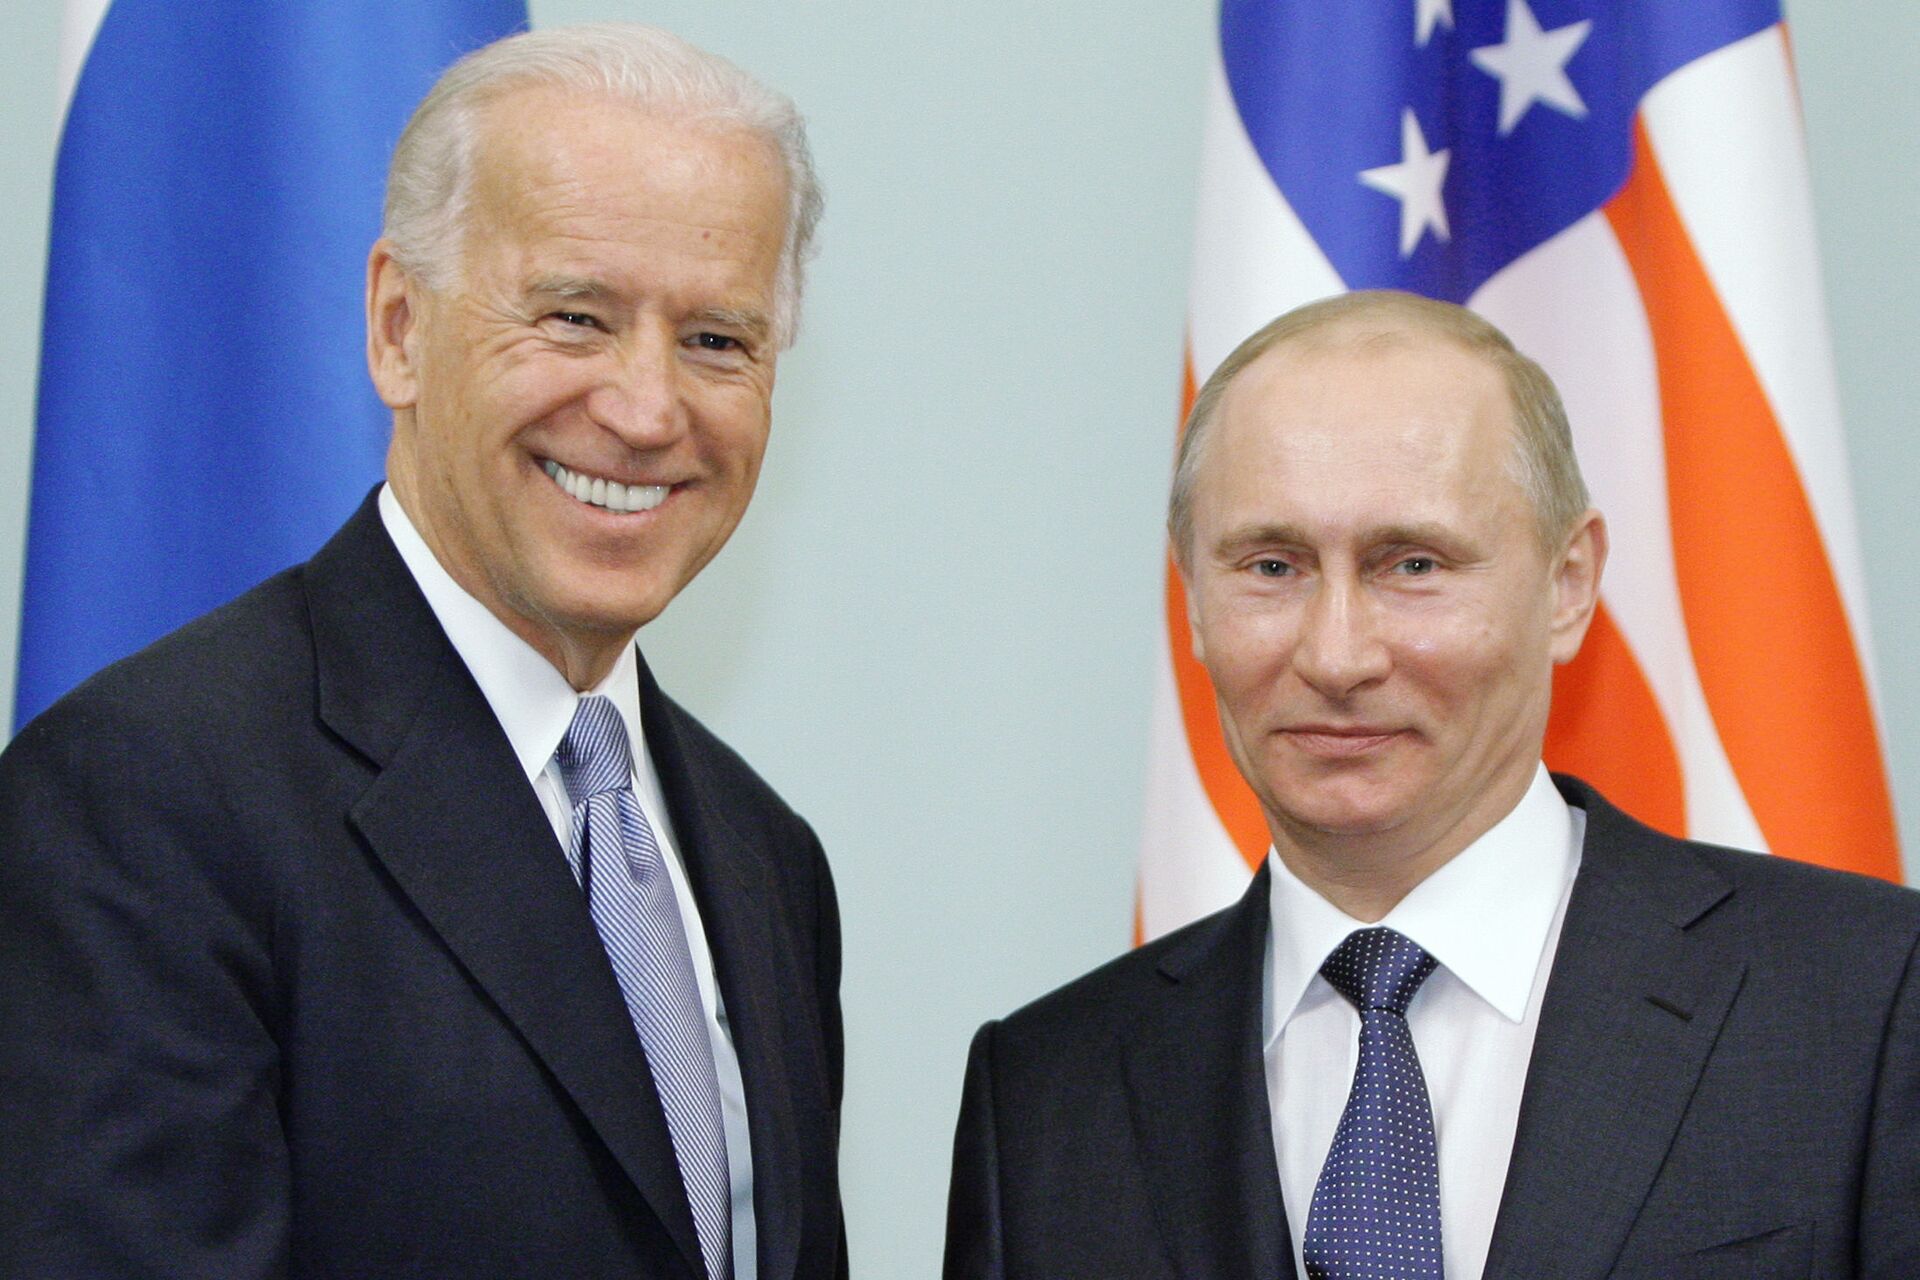 Pompeo: ‘Unprepared’ Biden Will Meet Putin at Geneva Summit With ‘Self-Dealt Weak Hand’ - Sputnik International, 1920, 15.06.2021